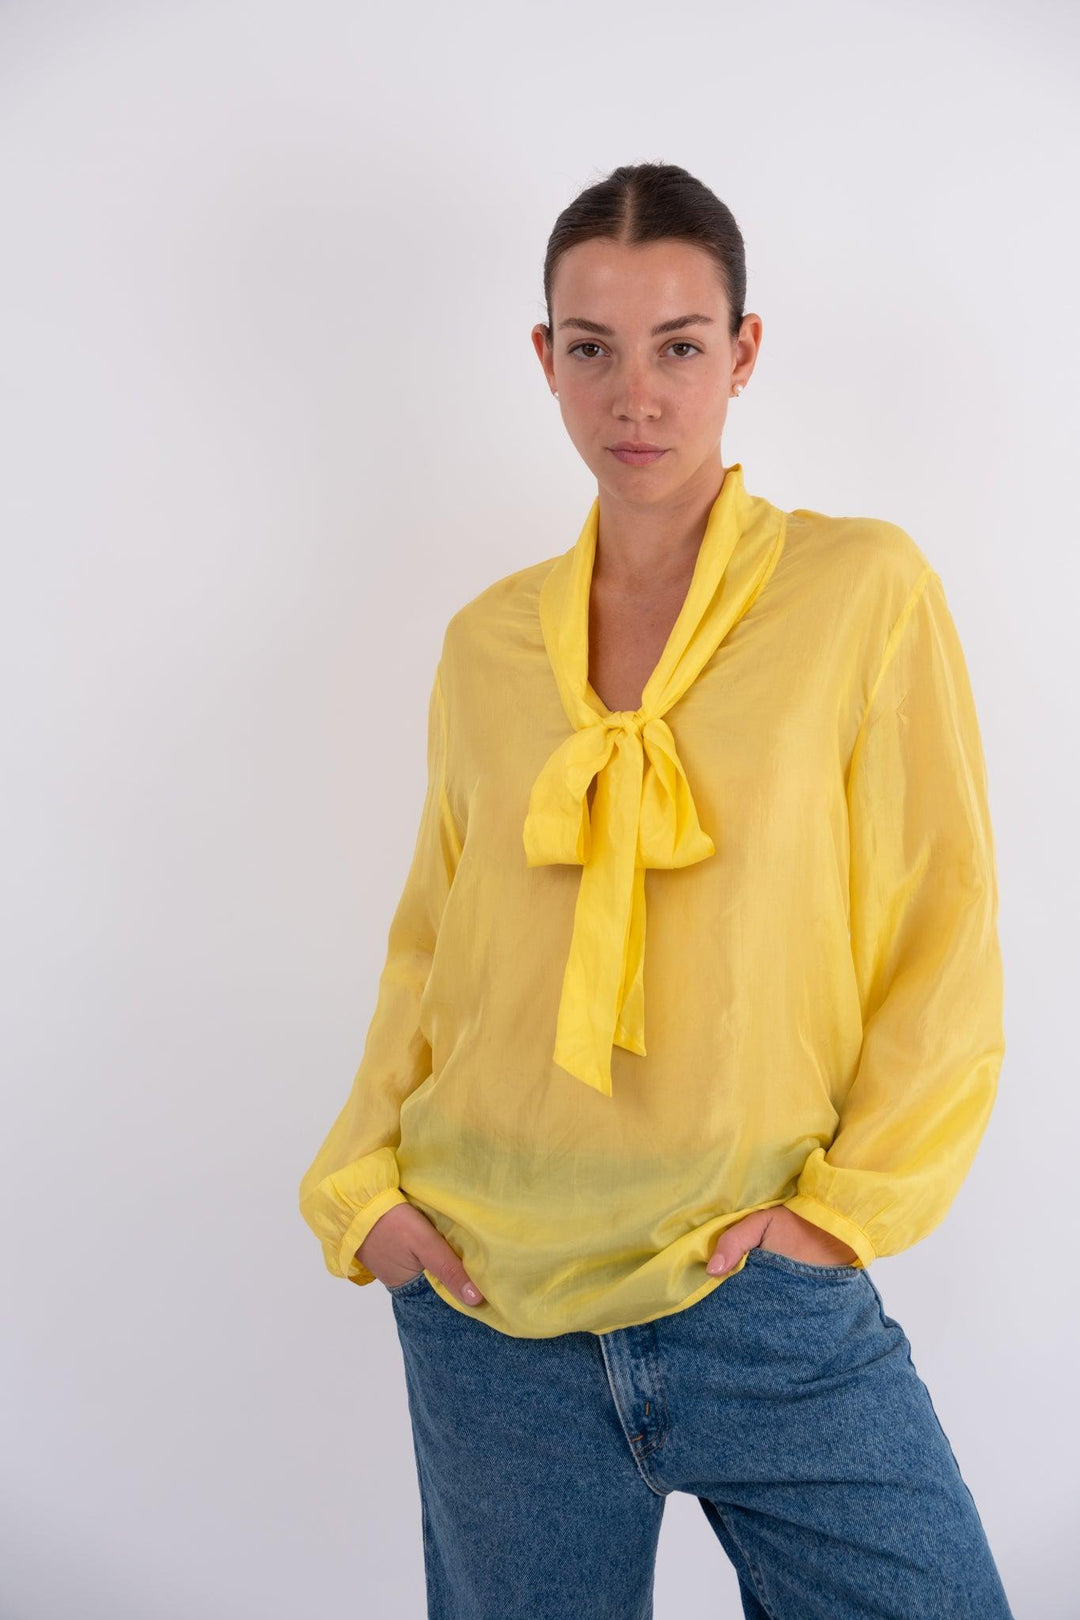 חולצת משי צהובה שקופה וינטג' - Volver